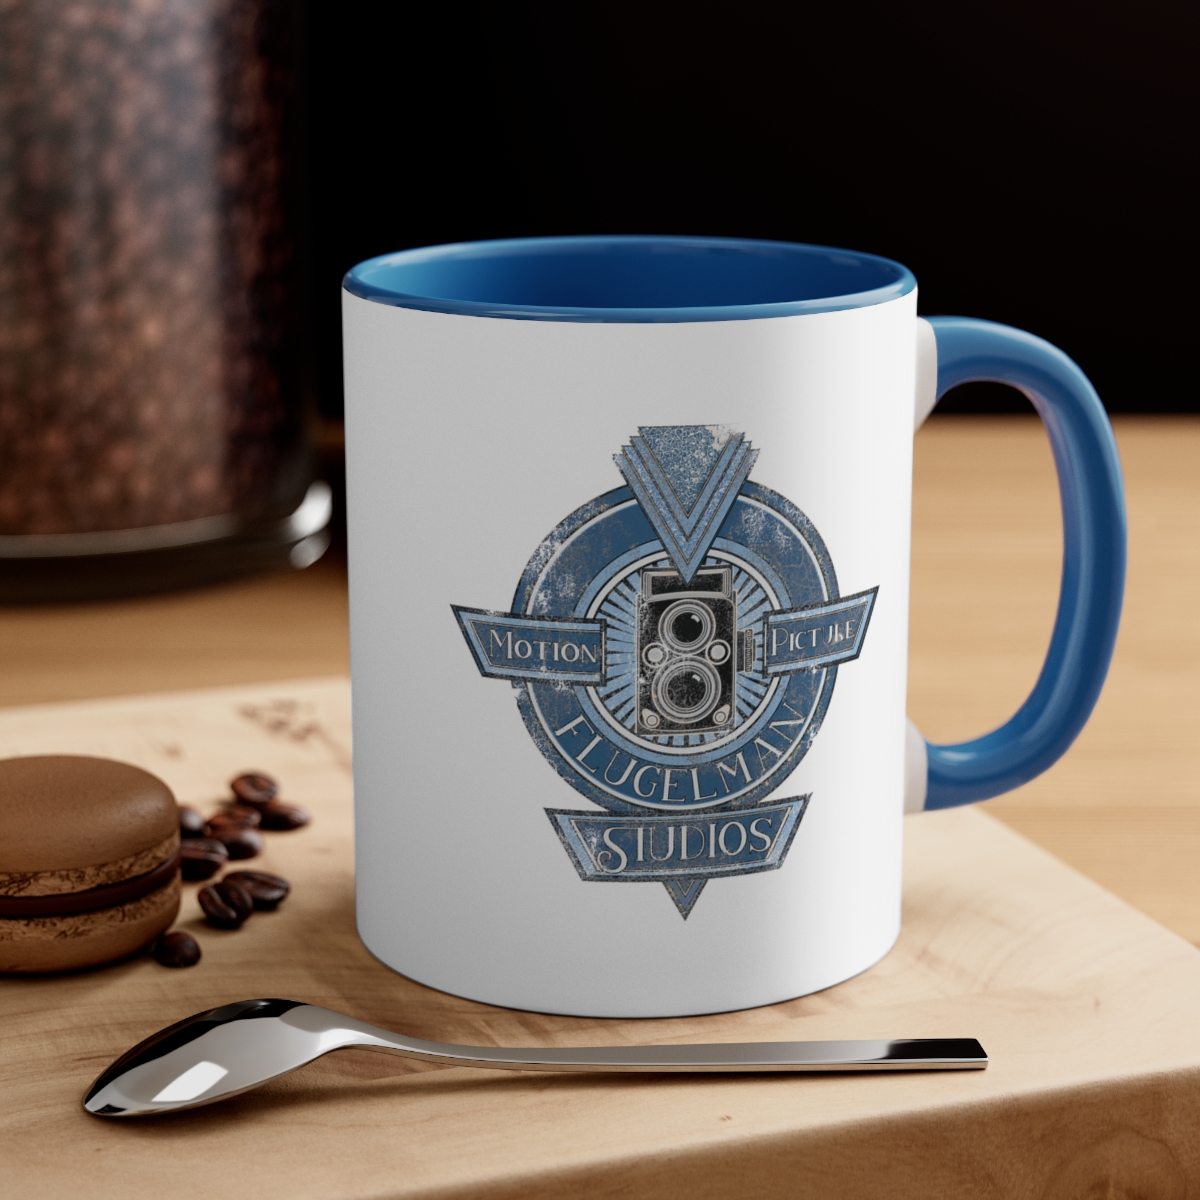 Flugelman (blue) - Accent Coffee Mug, 11oz